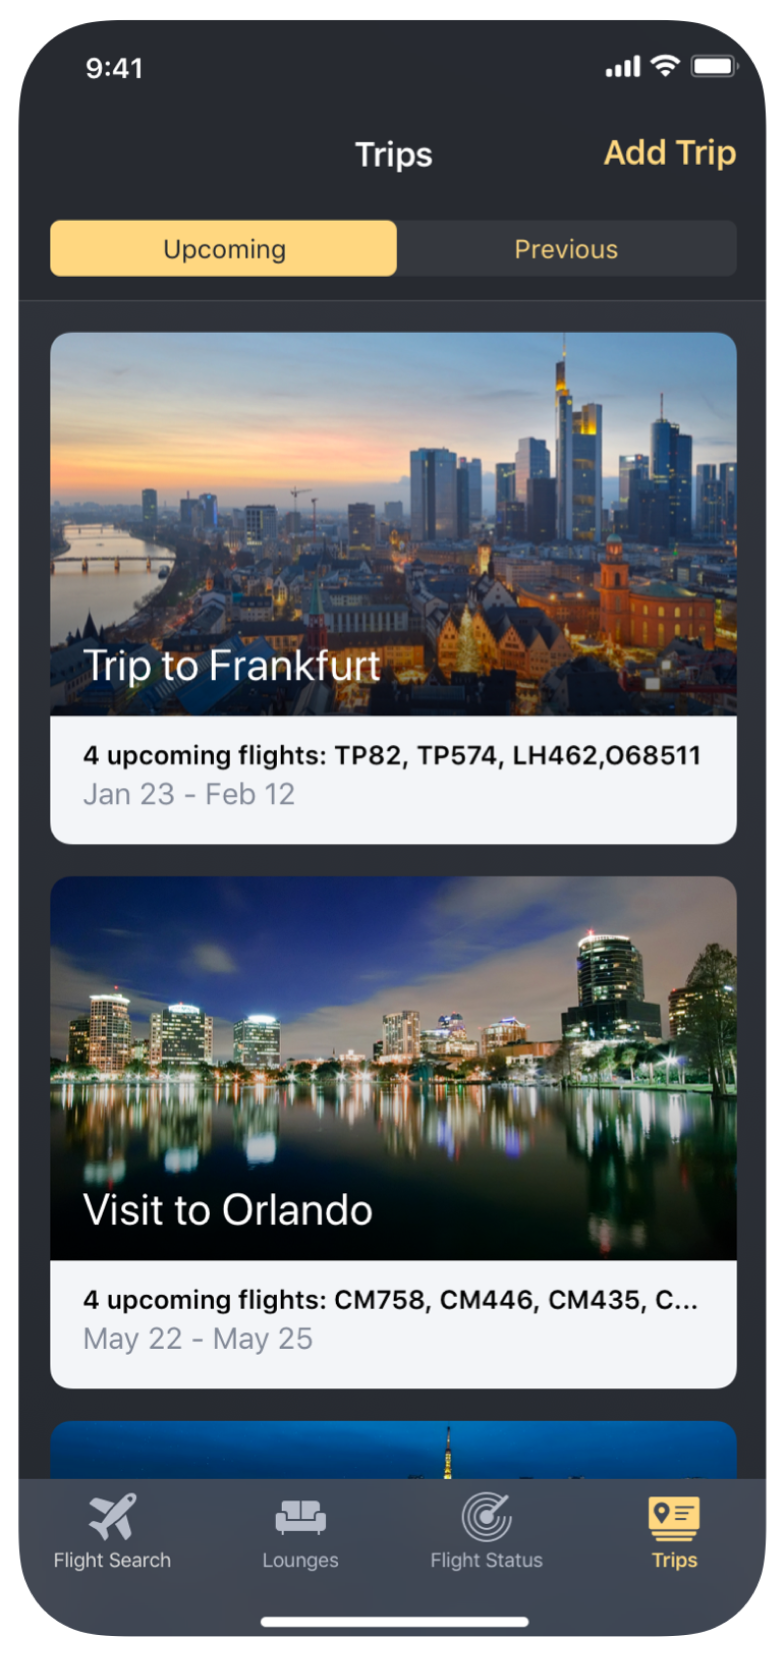 Nagarro developed app for trip planning_Star Alliance